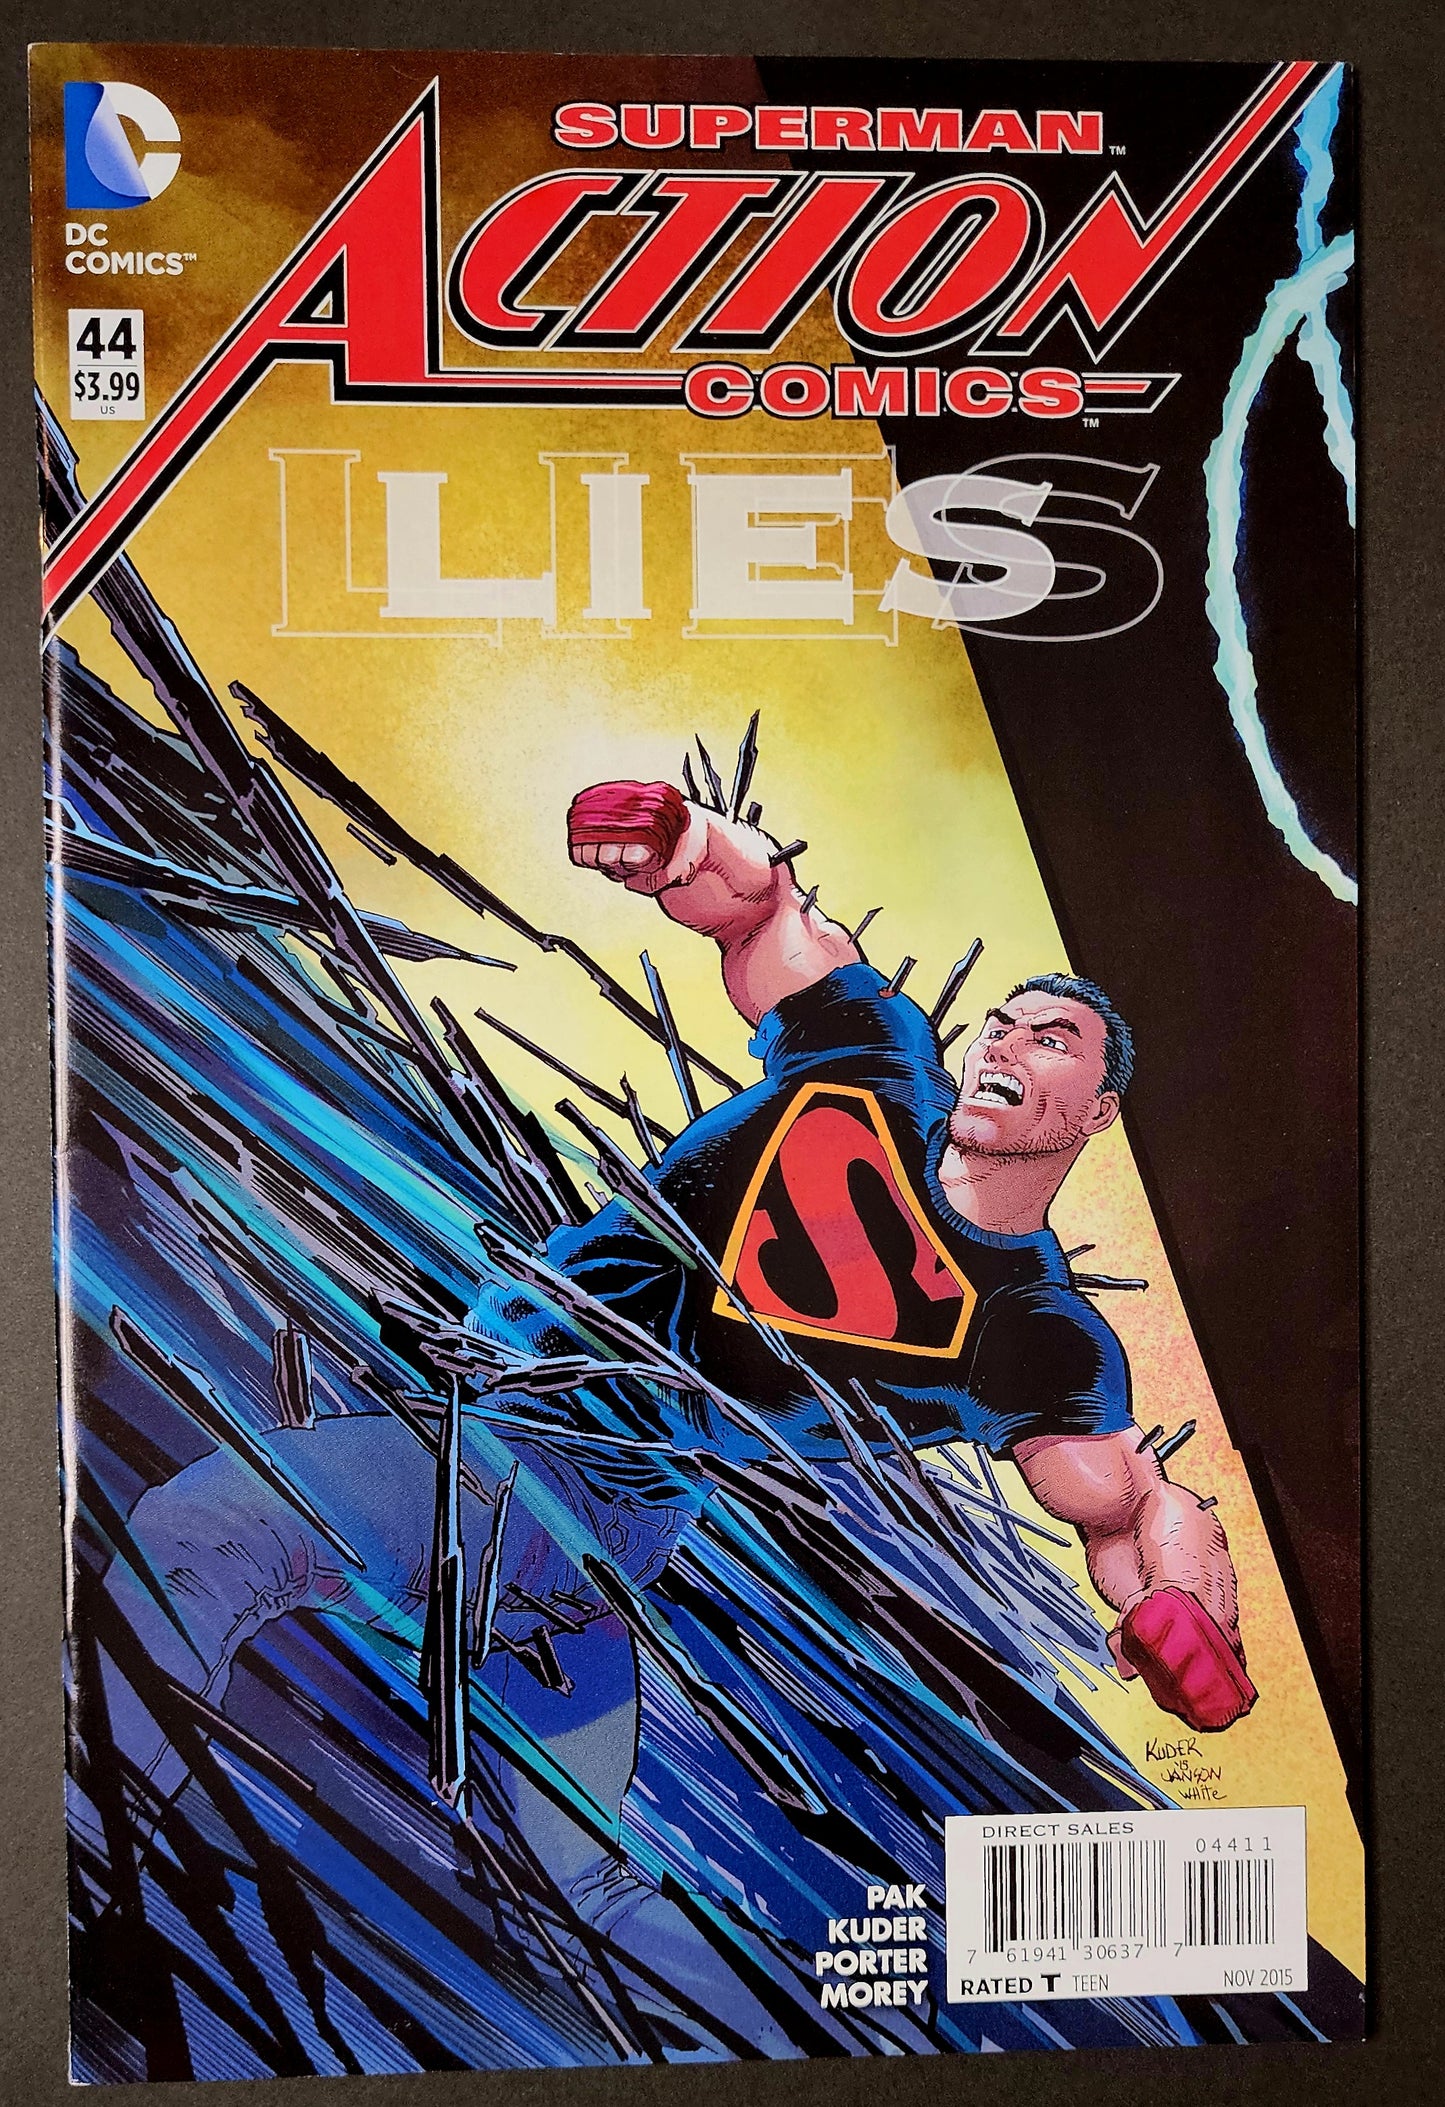 Action Comics (Vol. 2) #44 (VF)